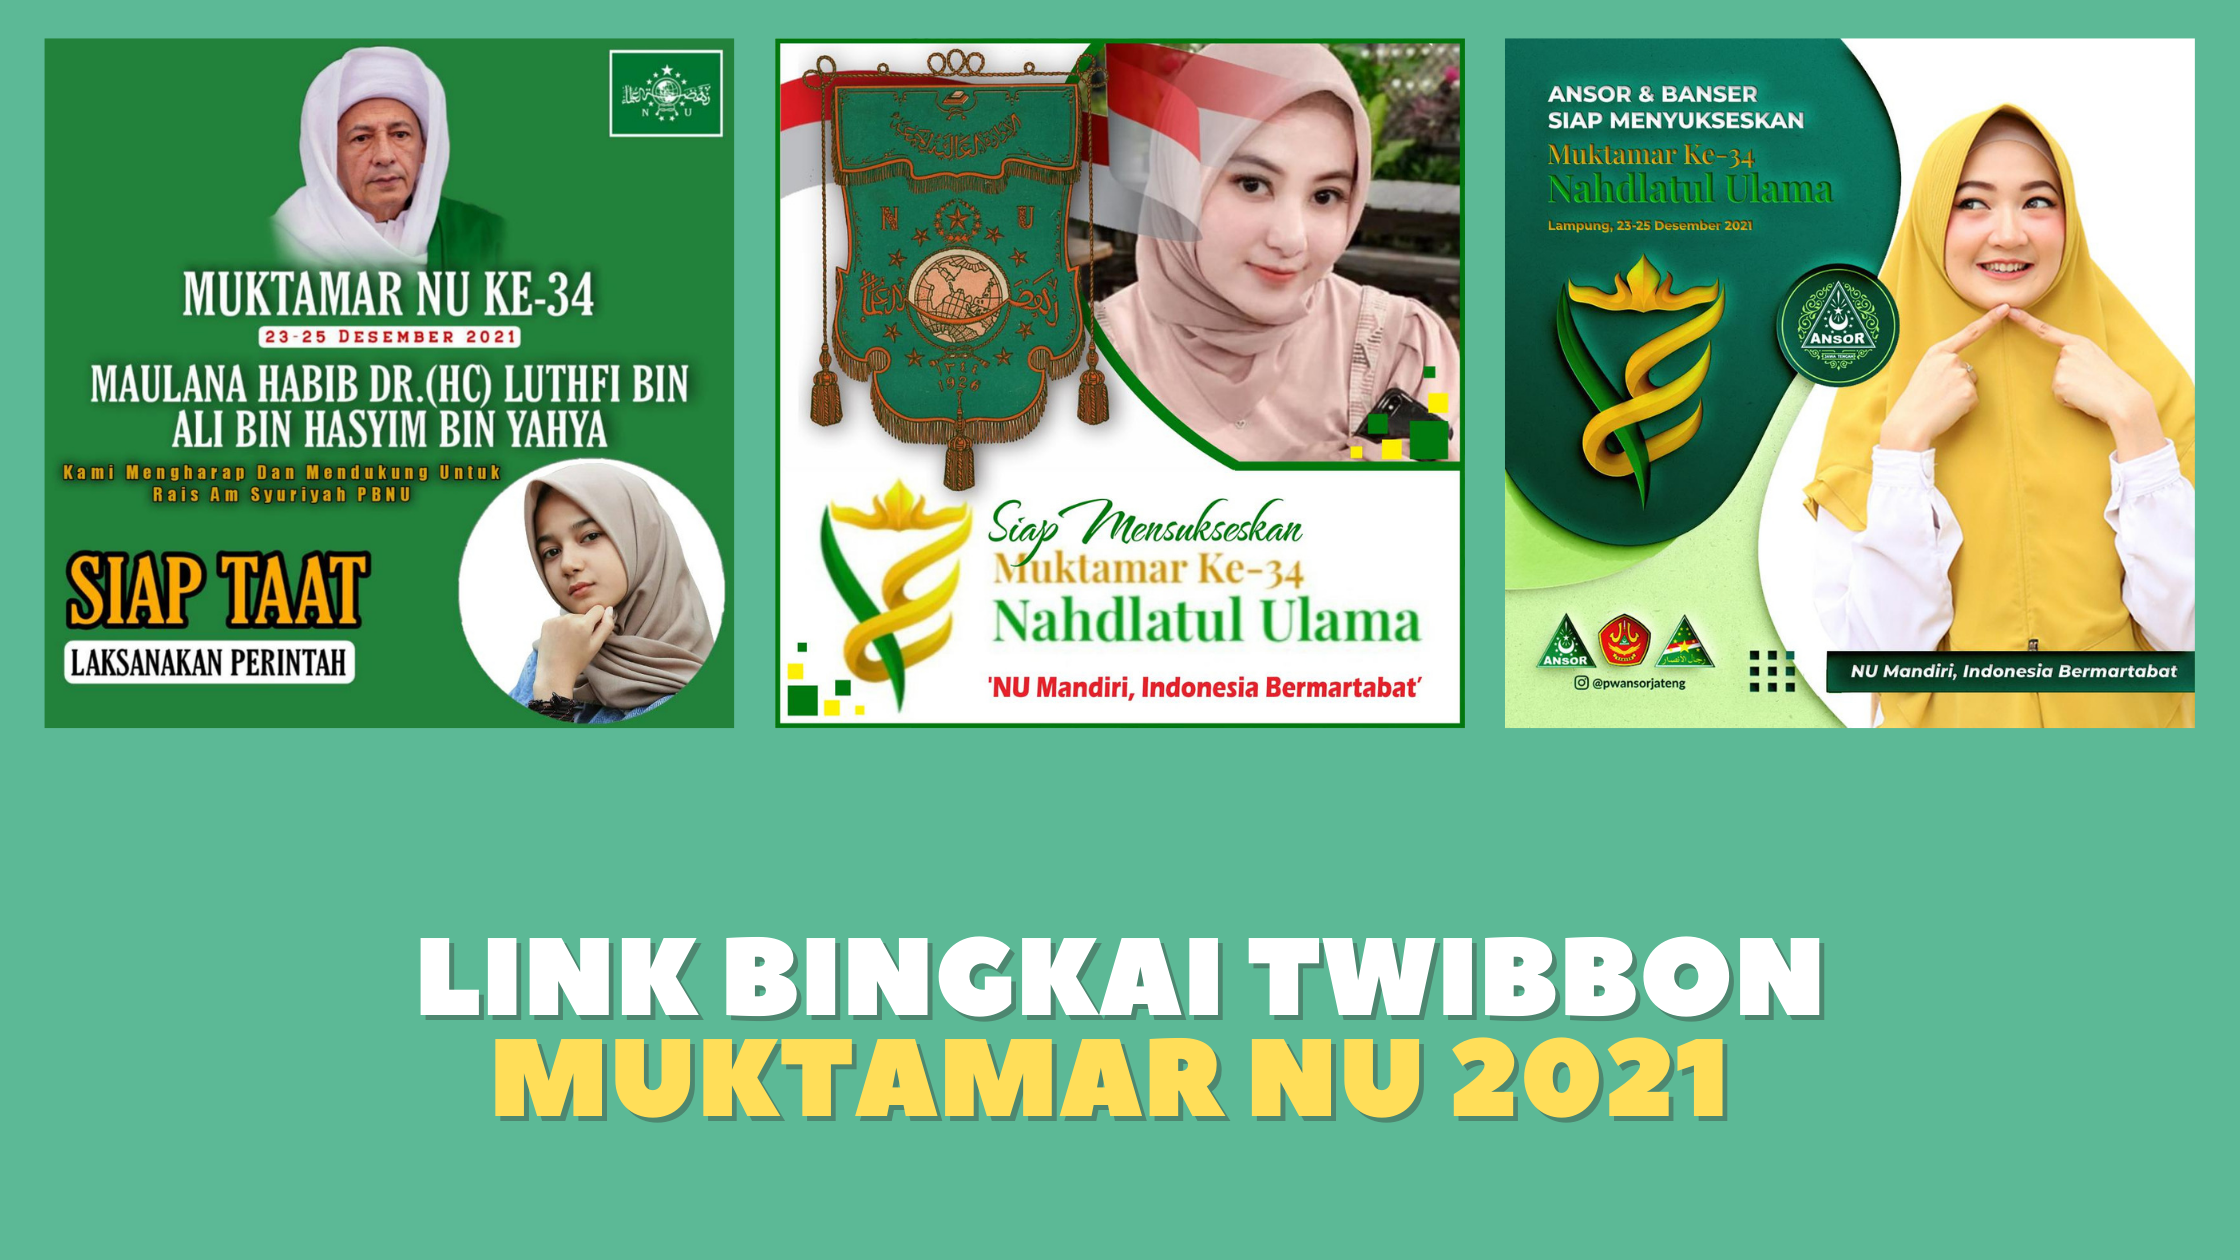 Bingkai Twibbon Muktamar NU 2021 untuk Media Sosial